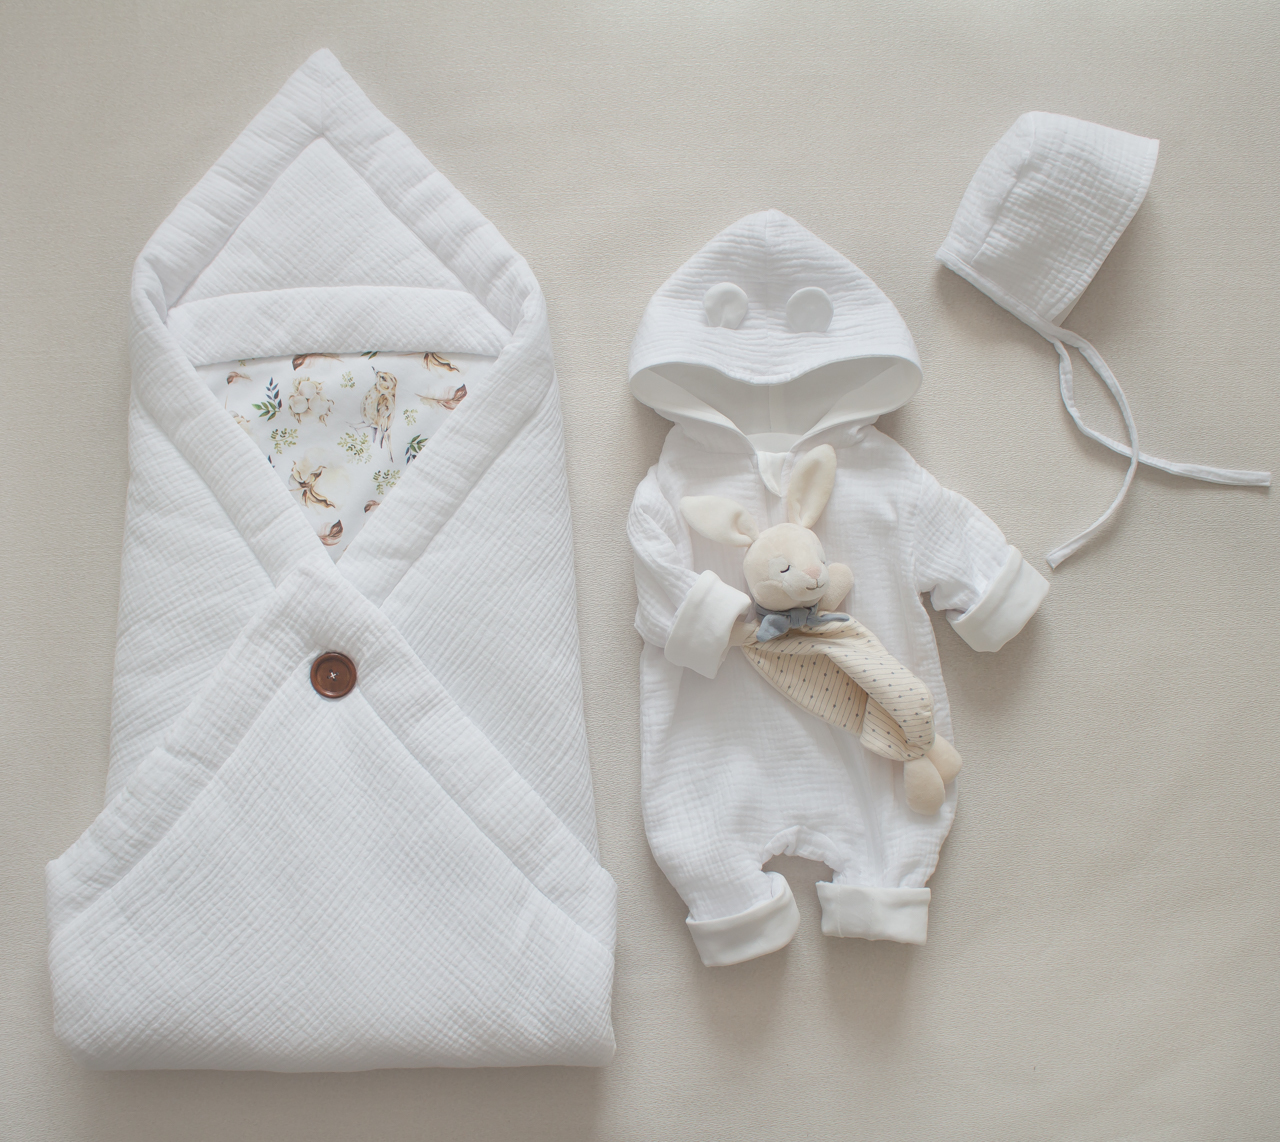 Конверт для новорожденного – традиционный выбор. Сшить его самим или купить уже готовый?